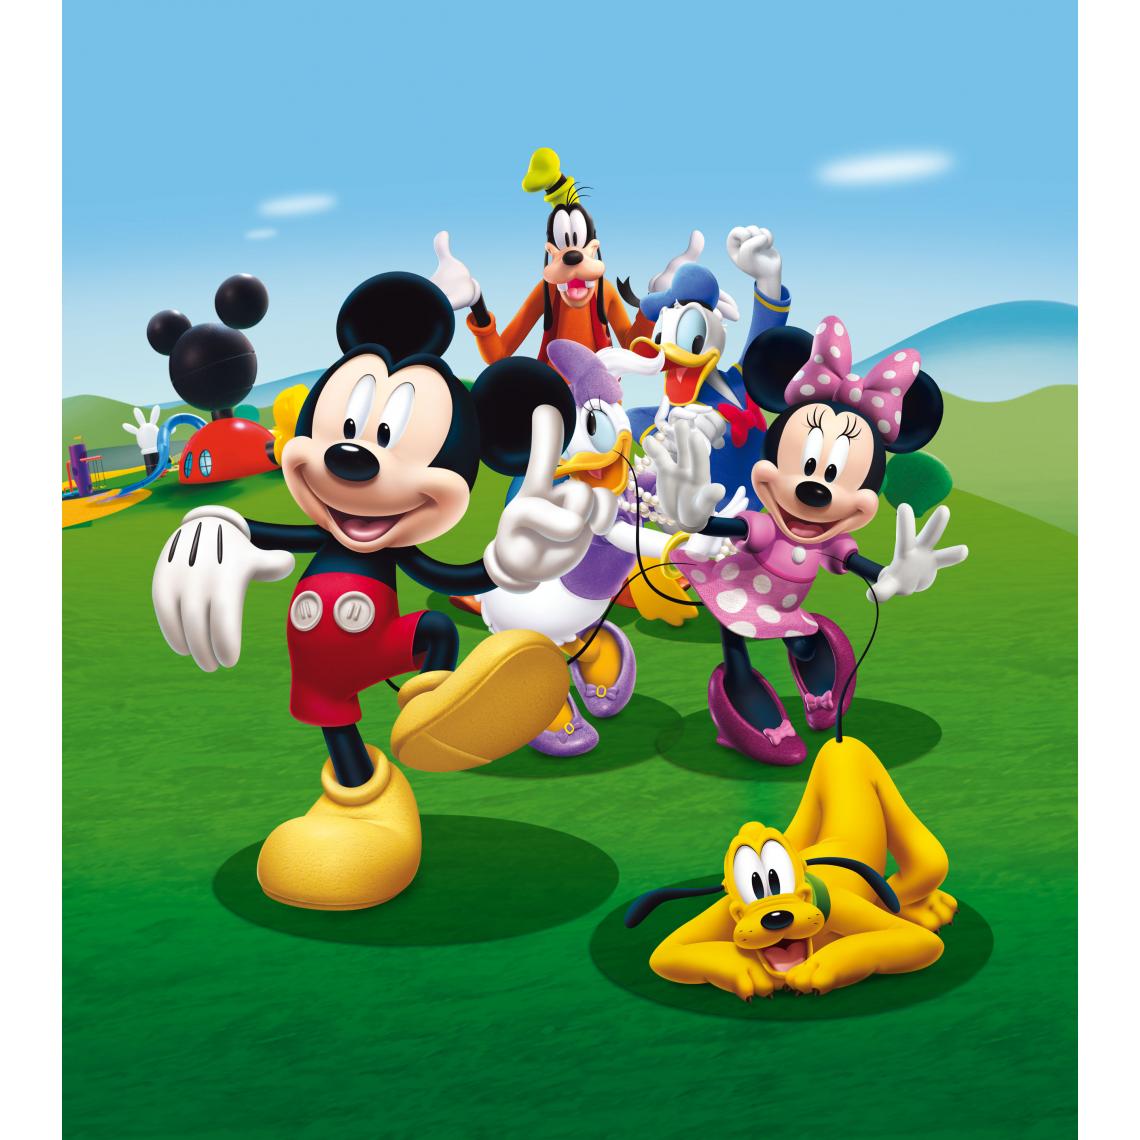 Disney Montres - Disney papier peint panoramique Mickey Mouse vert, bleu et jaune - 600617 - 180 x 202 cm - Papier peint